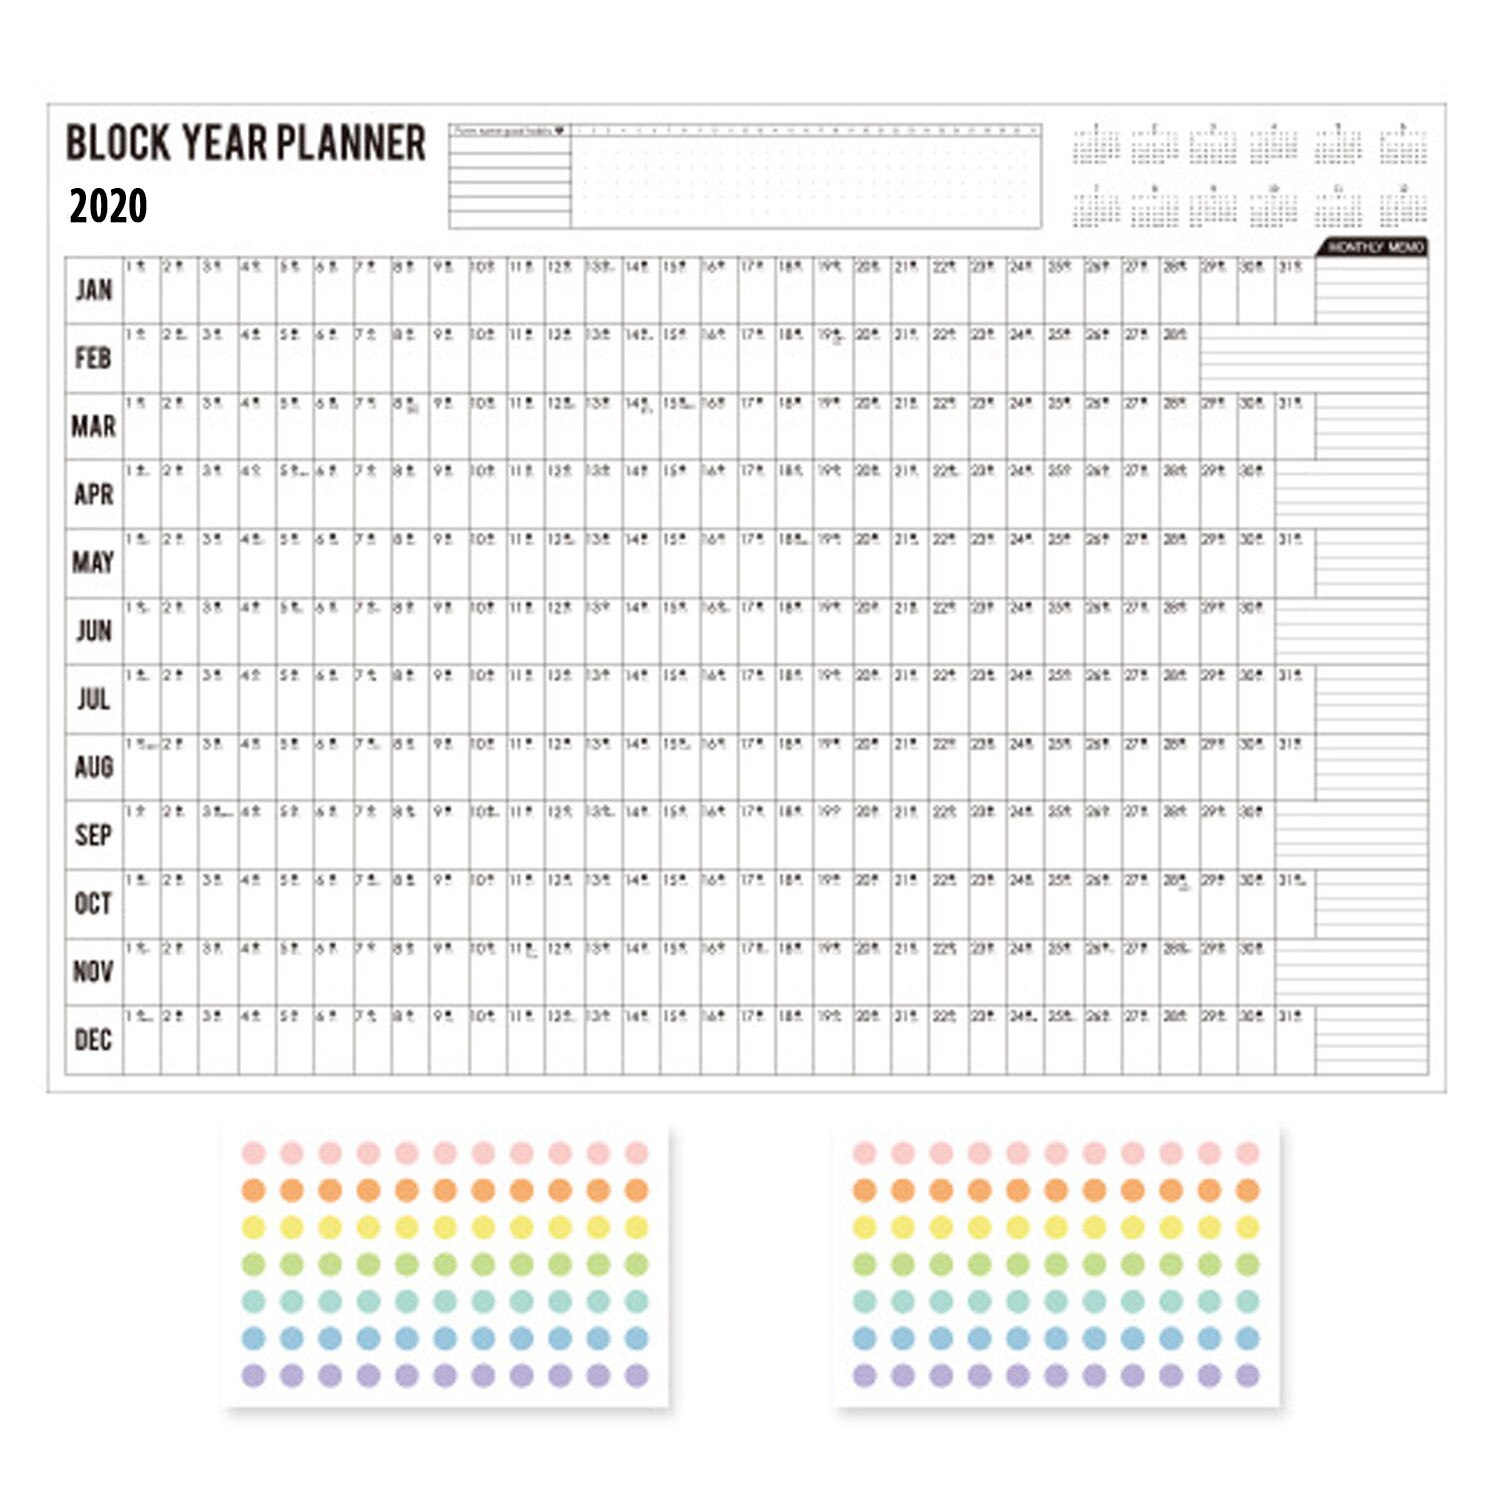 Vægkalender blok år planner daglig plan papir kalender med 2 ark eva mark klistermærker til kontorskole hjemmeartikler